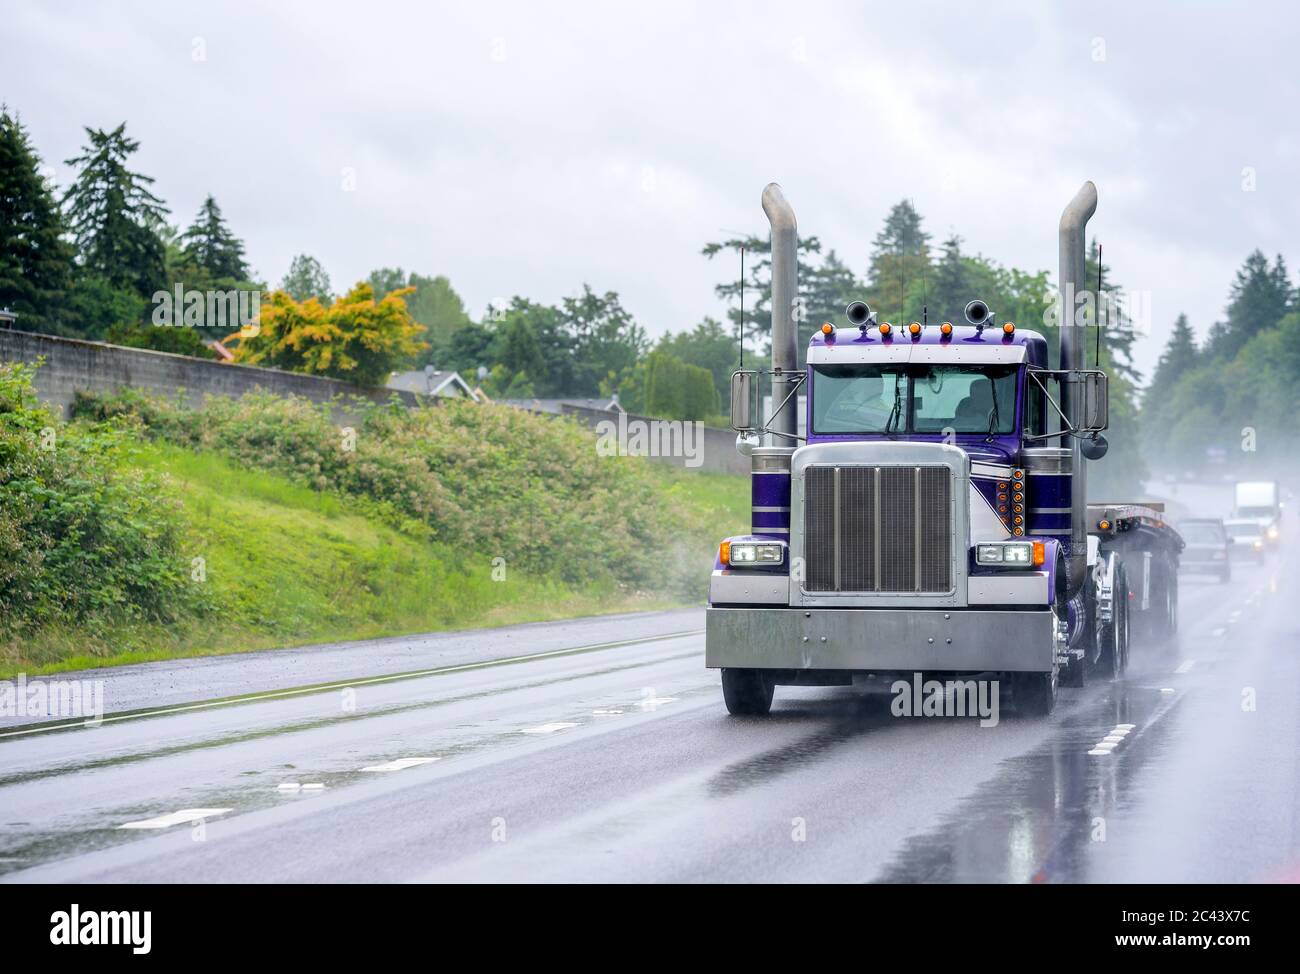 Leistungsstarke klassische industrielle Qualität große Rig blau semi-Truck mit hohen Auspuffrohren und Flachbett Sattelauflieger läuft auf der Gefahr nass regnet Straße wit Stockfoto